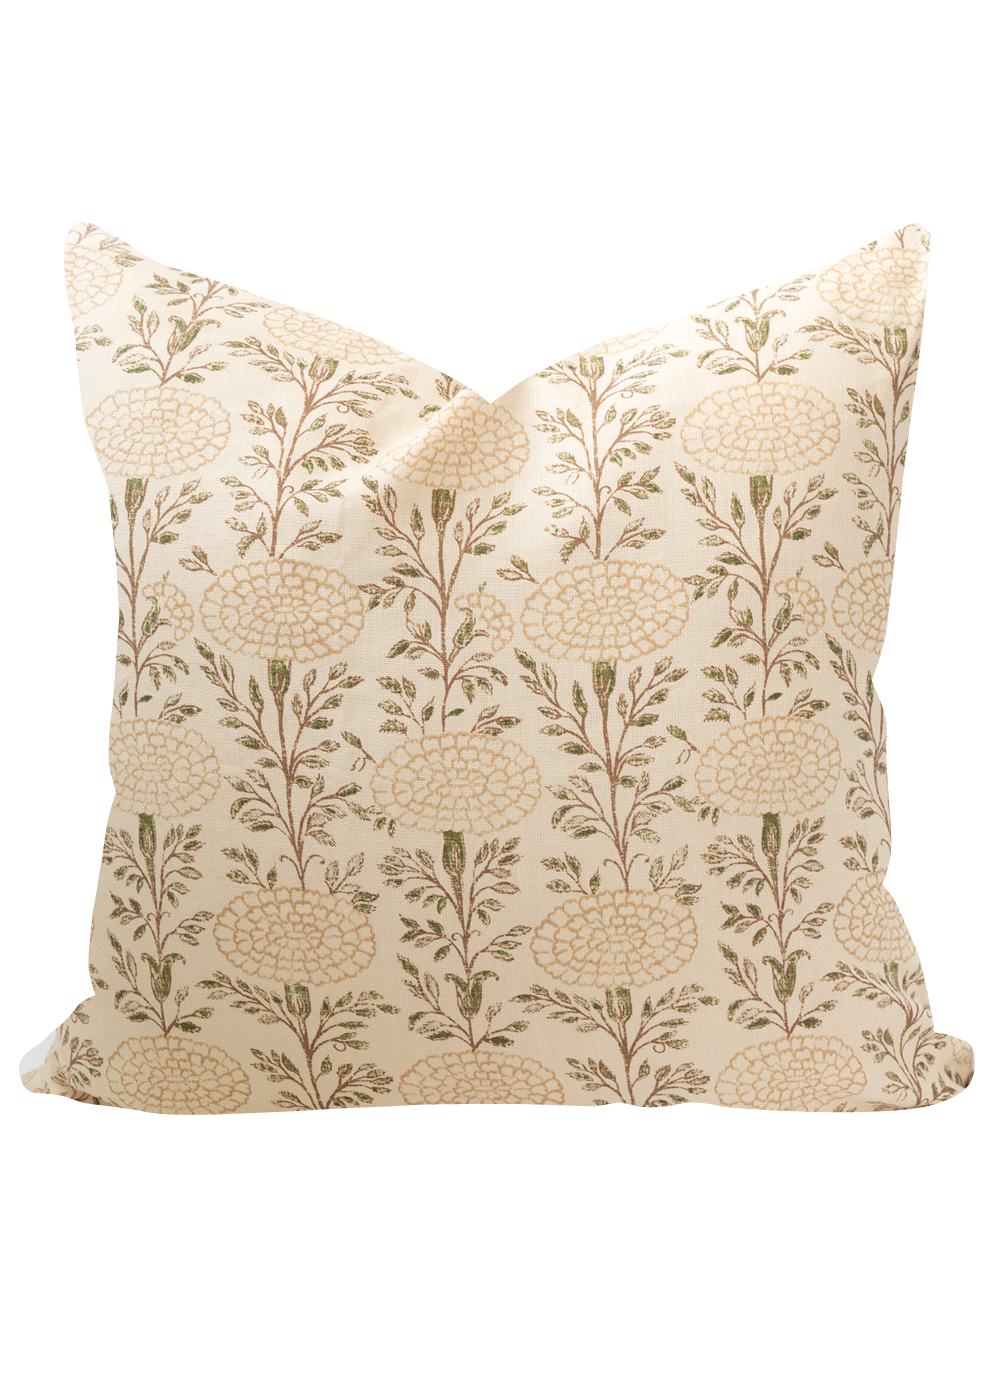 Freya Pillow Cover, Desert Sand